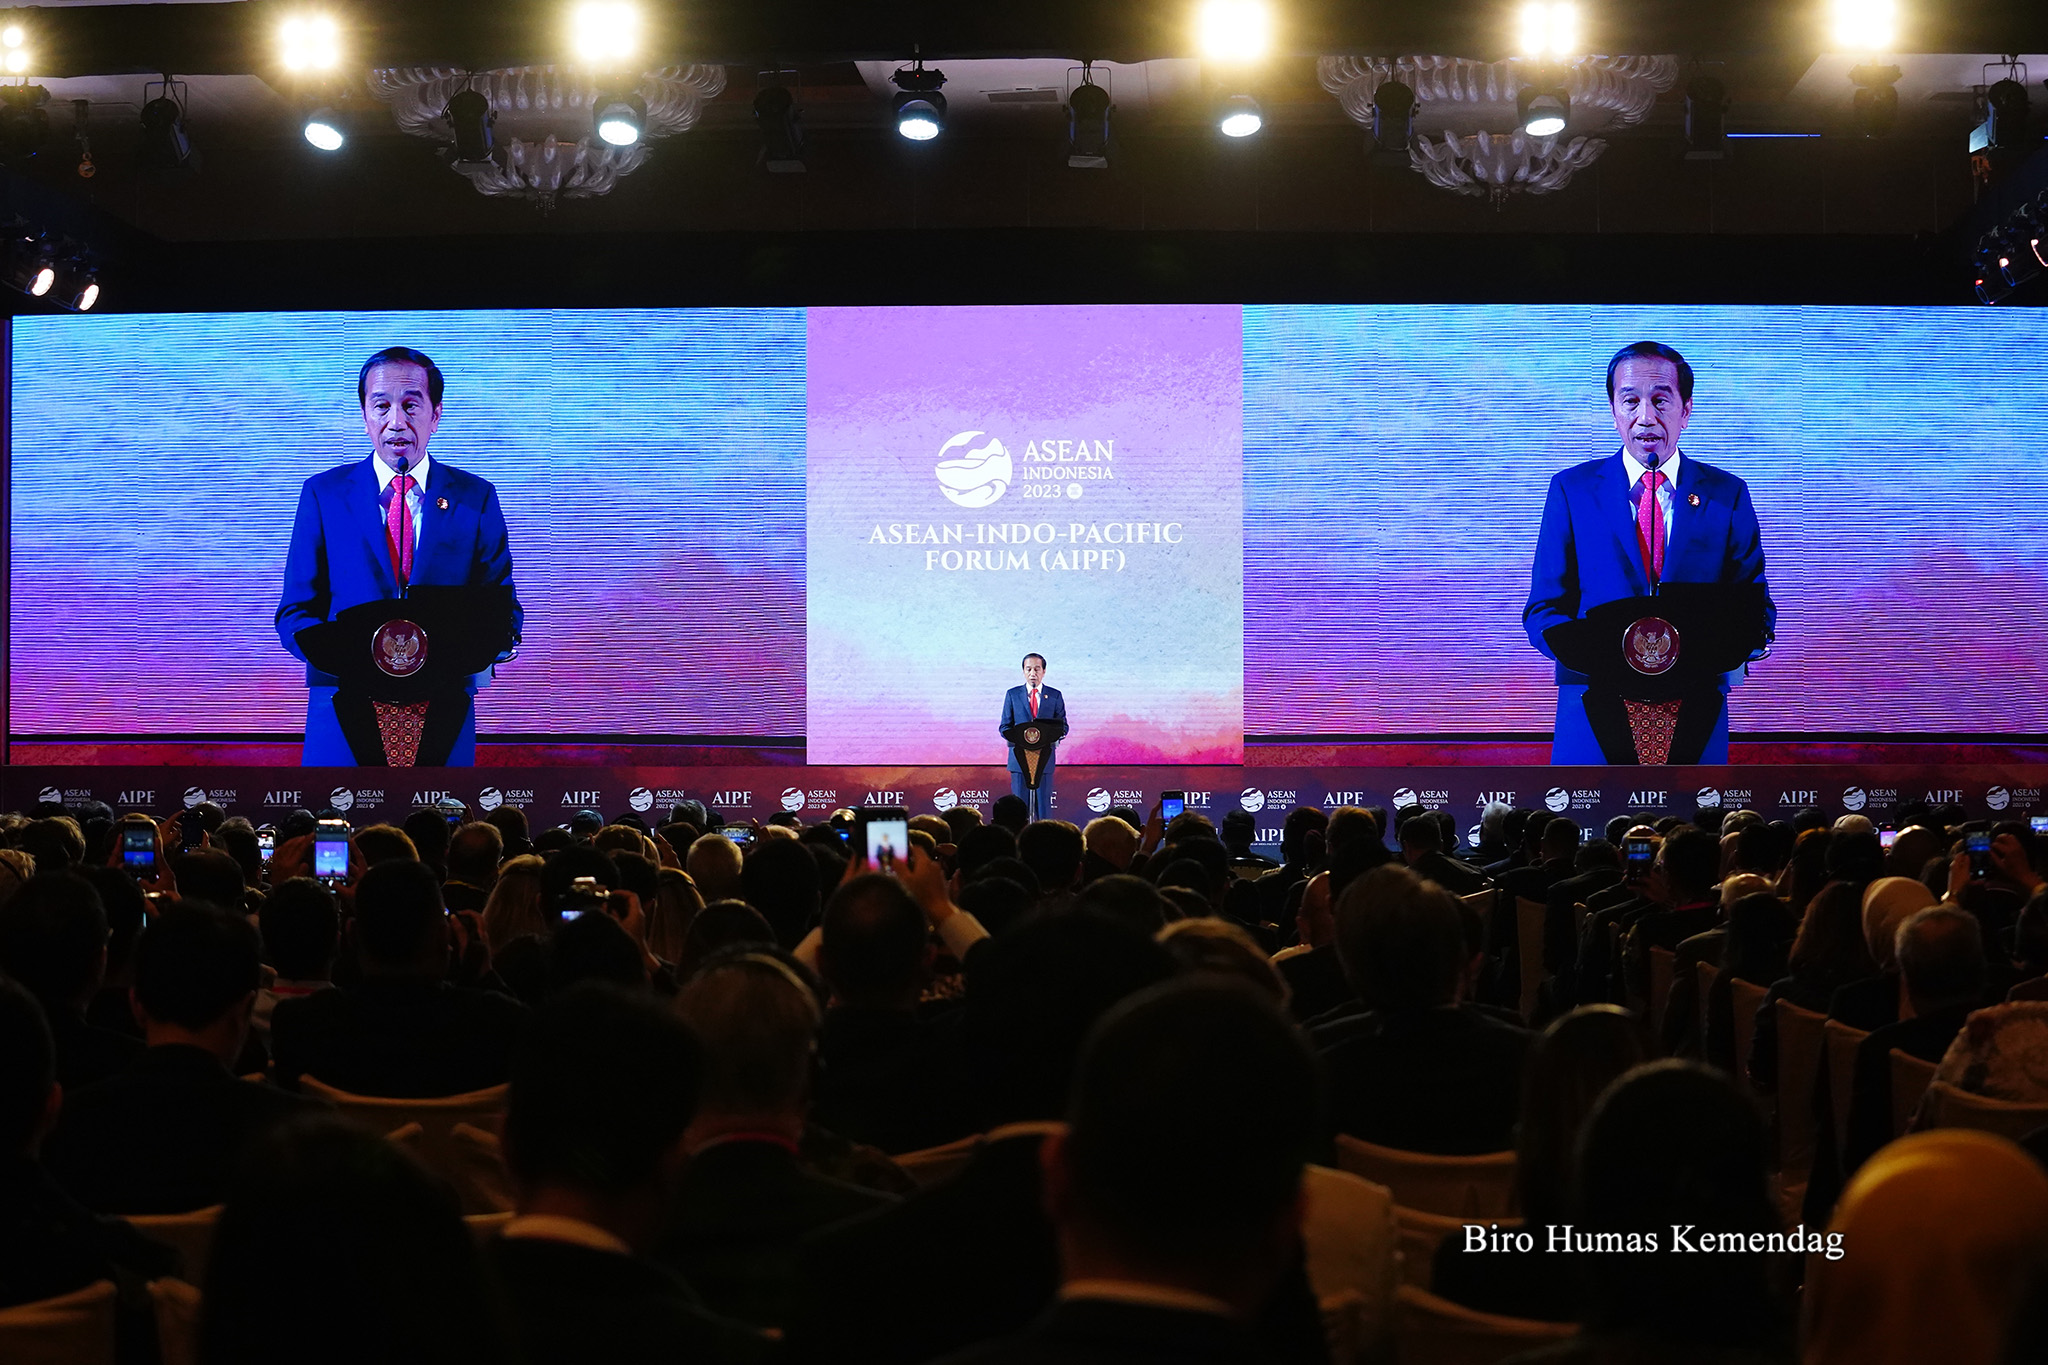 Presiden Replublik Indonesia, Joko Widodo membuka ASEAN-Indo-Pacific Forum (AIPF) yang diselenggarakan di Hotel Mulia, Jakarta, Selasa (5 Sep).